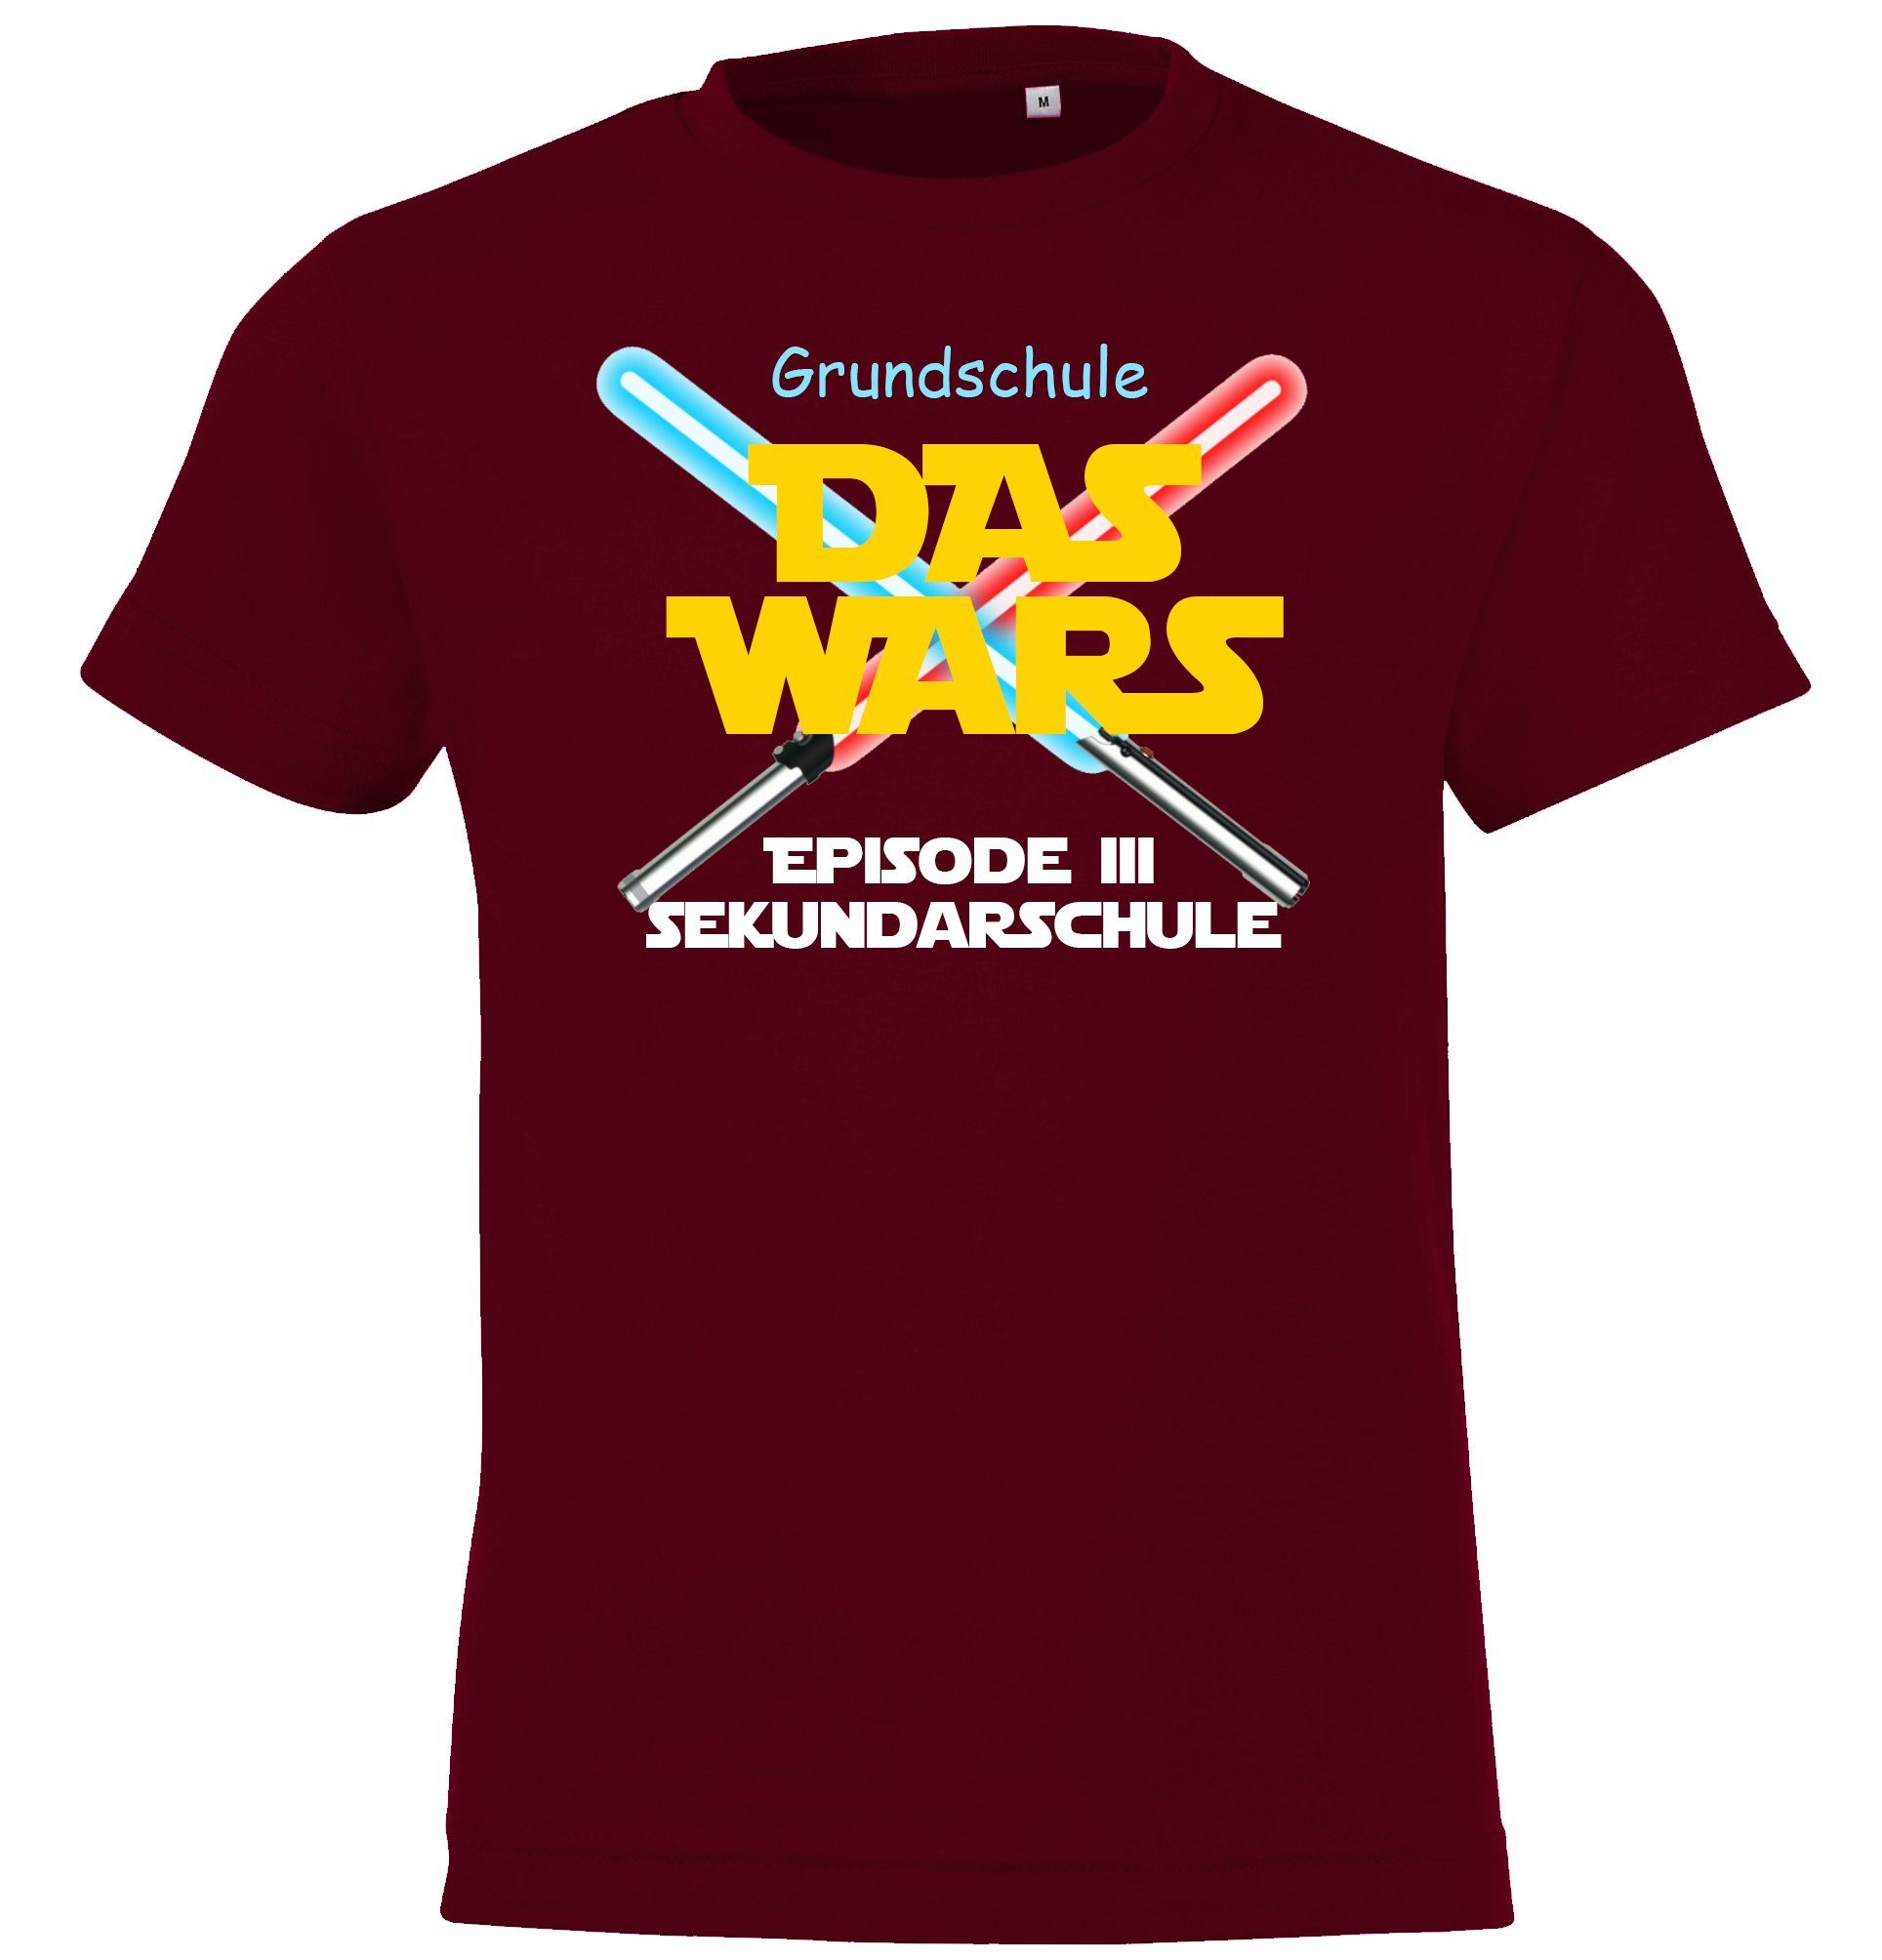 Burgund Wars T-Shirt Motiv lustigem Grundschule Das Kinder Youth Schulzeit Designz Shirt der mit